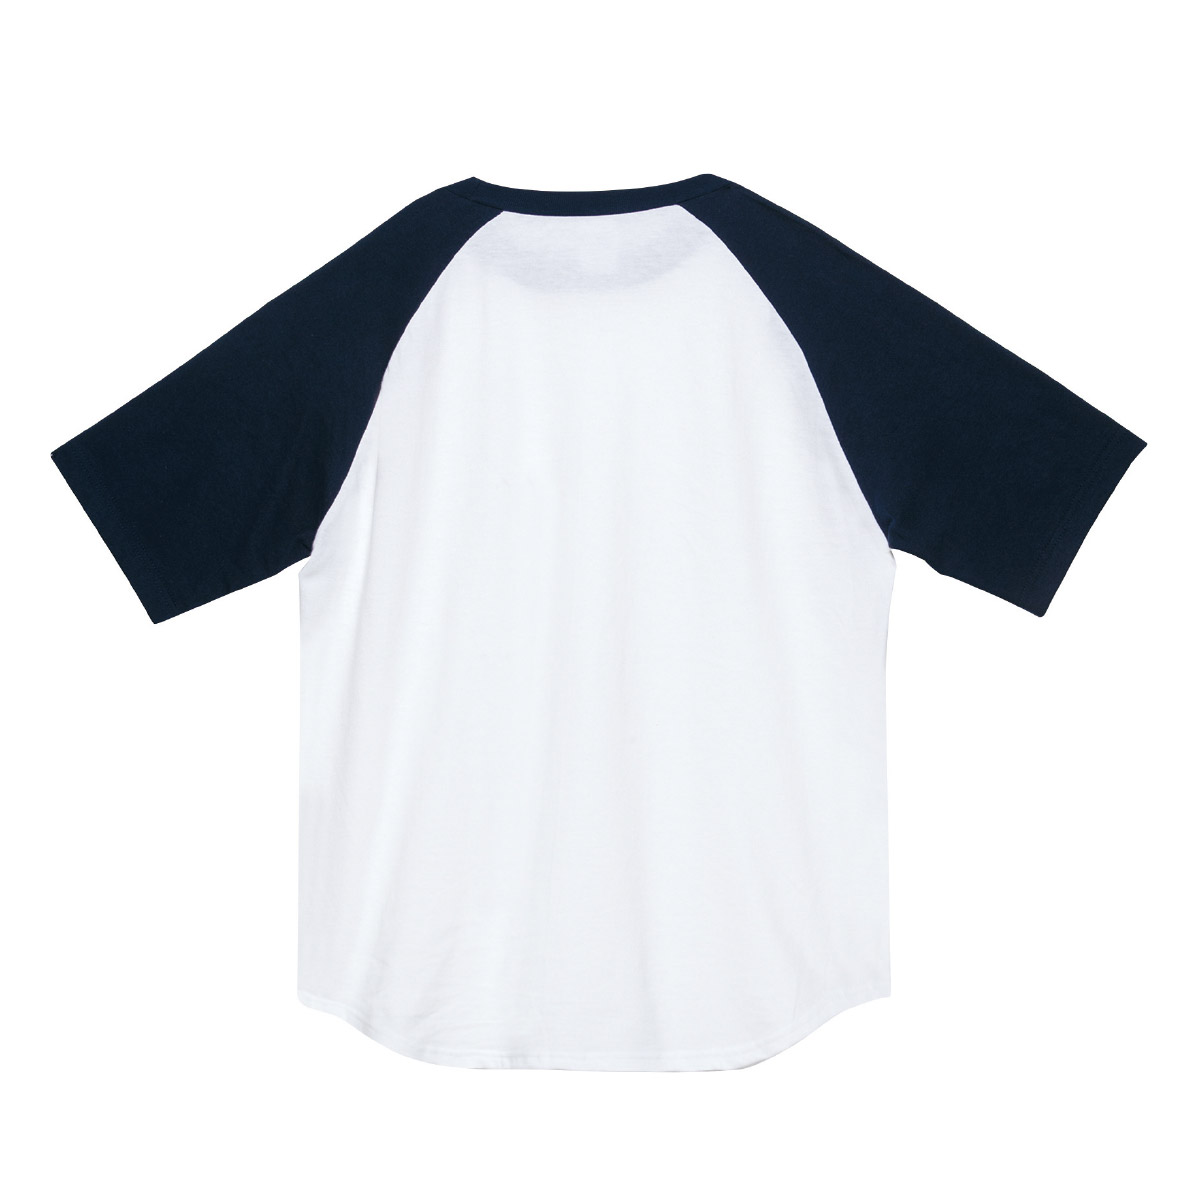 【楽天市場】ラグラン Tシャツ メンズ 大きいサイズ 半袖 無地 厚手 2XL-3XLサイズ Printstar プリントスター 5.6オンス